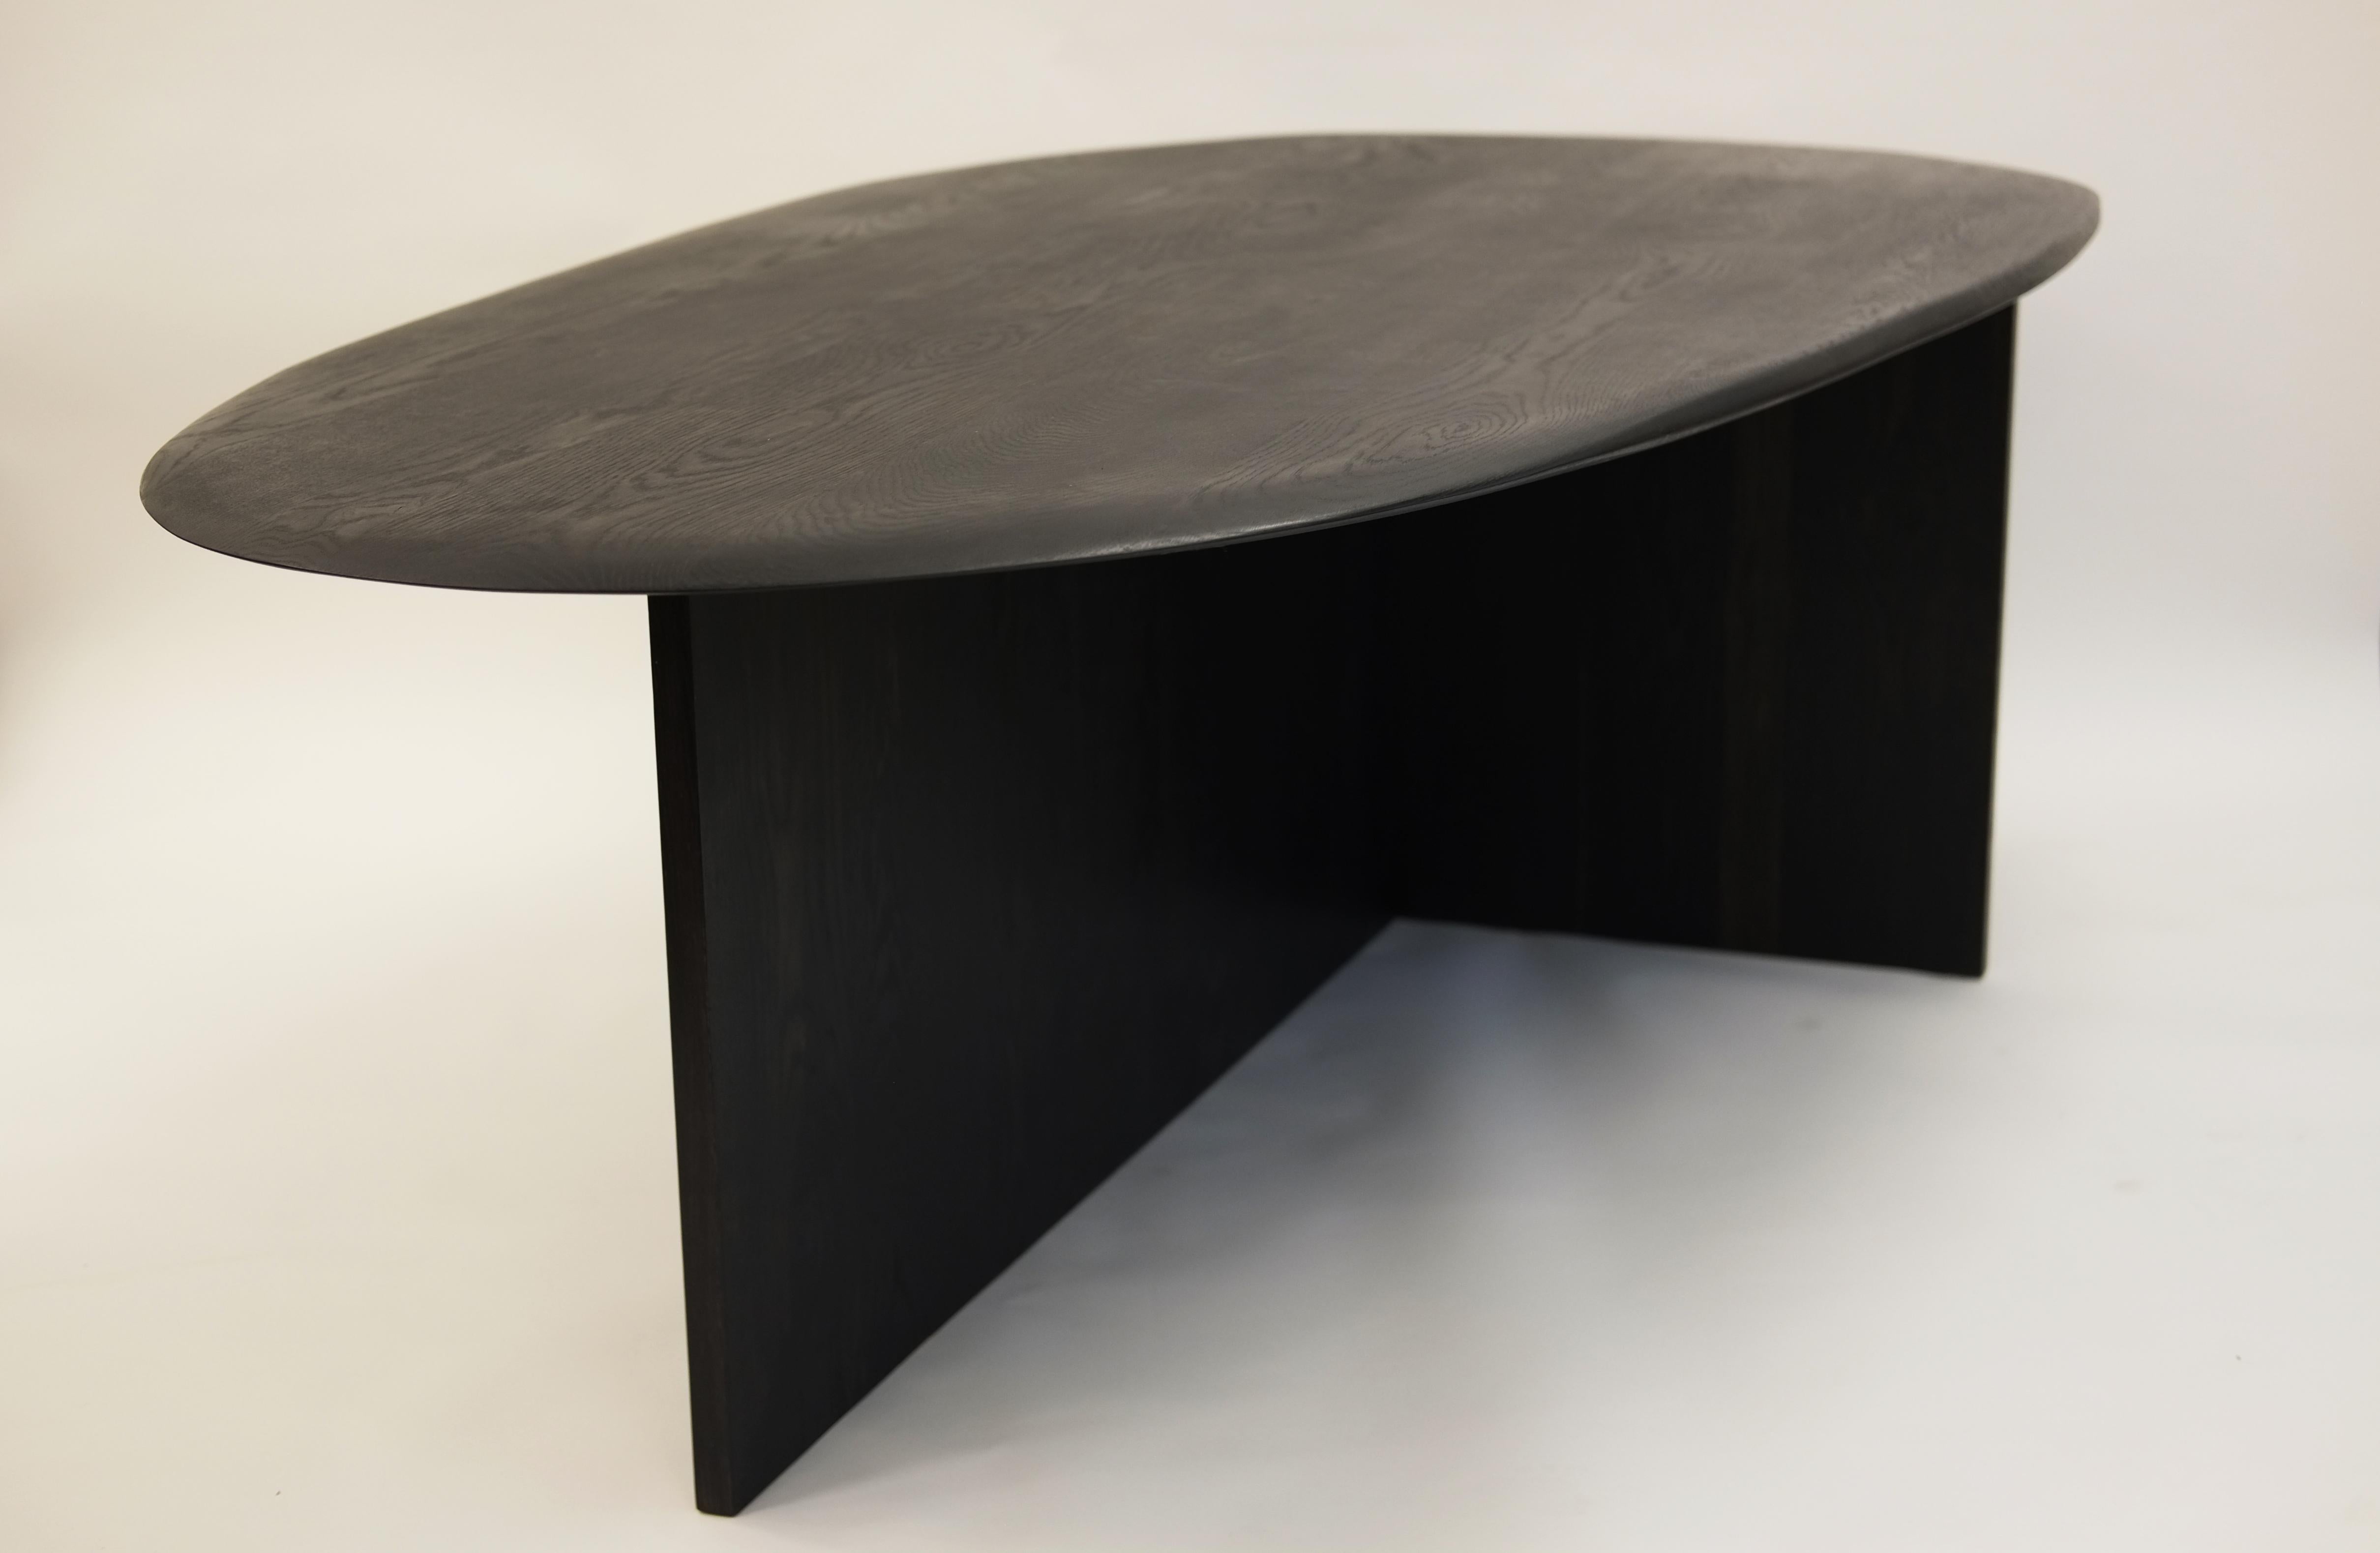 Table Pebble de Fred Rigby Studio
Dimensions : L 240 x l 126 x H 74 cm
Matériaux : Chêne massif, ébonisé naturellement.


Fred Rigby Studio est un cabinet d'architecture d'intérieur et d'ameublement basé à Londres, fondé par Fred Rigby en 2008. Ce